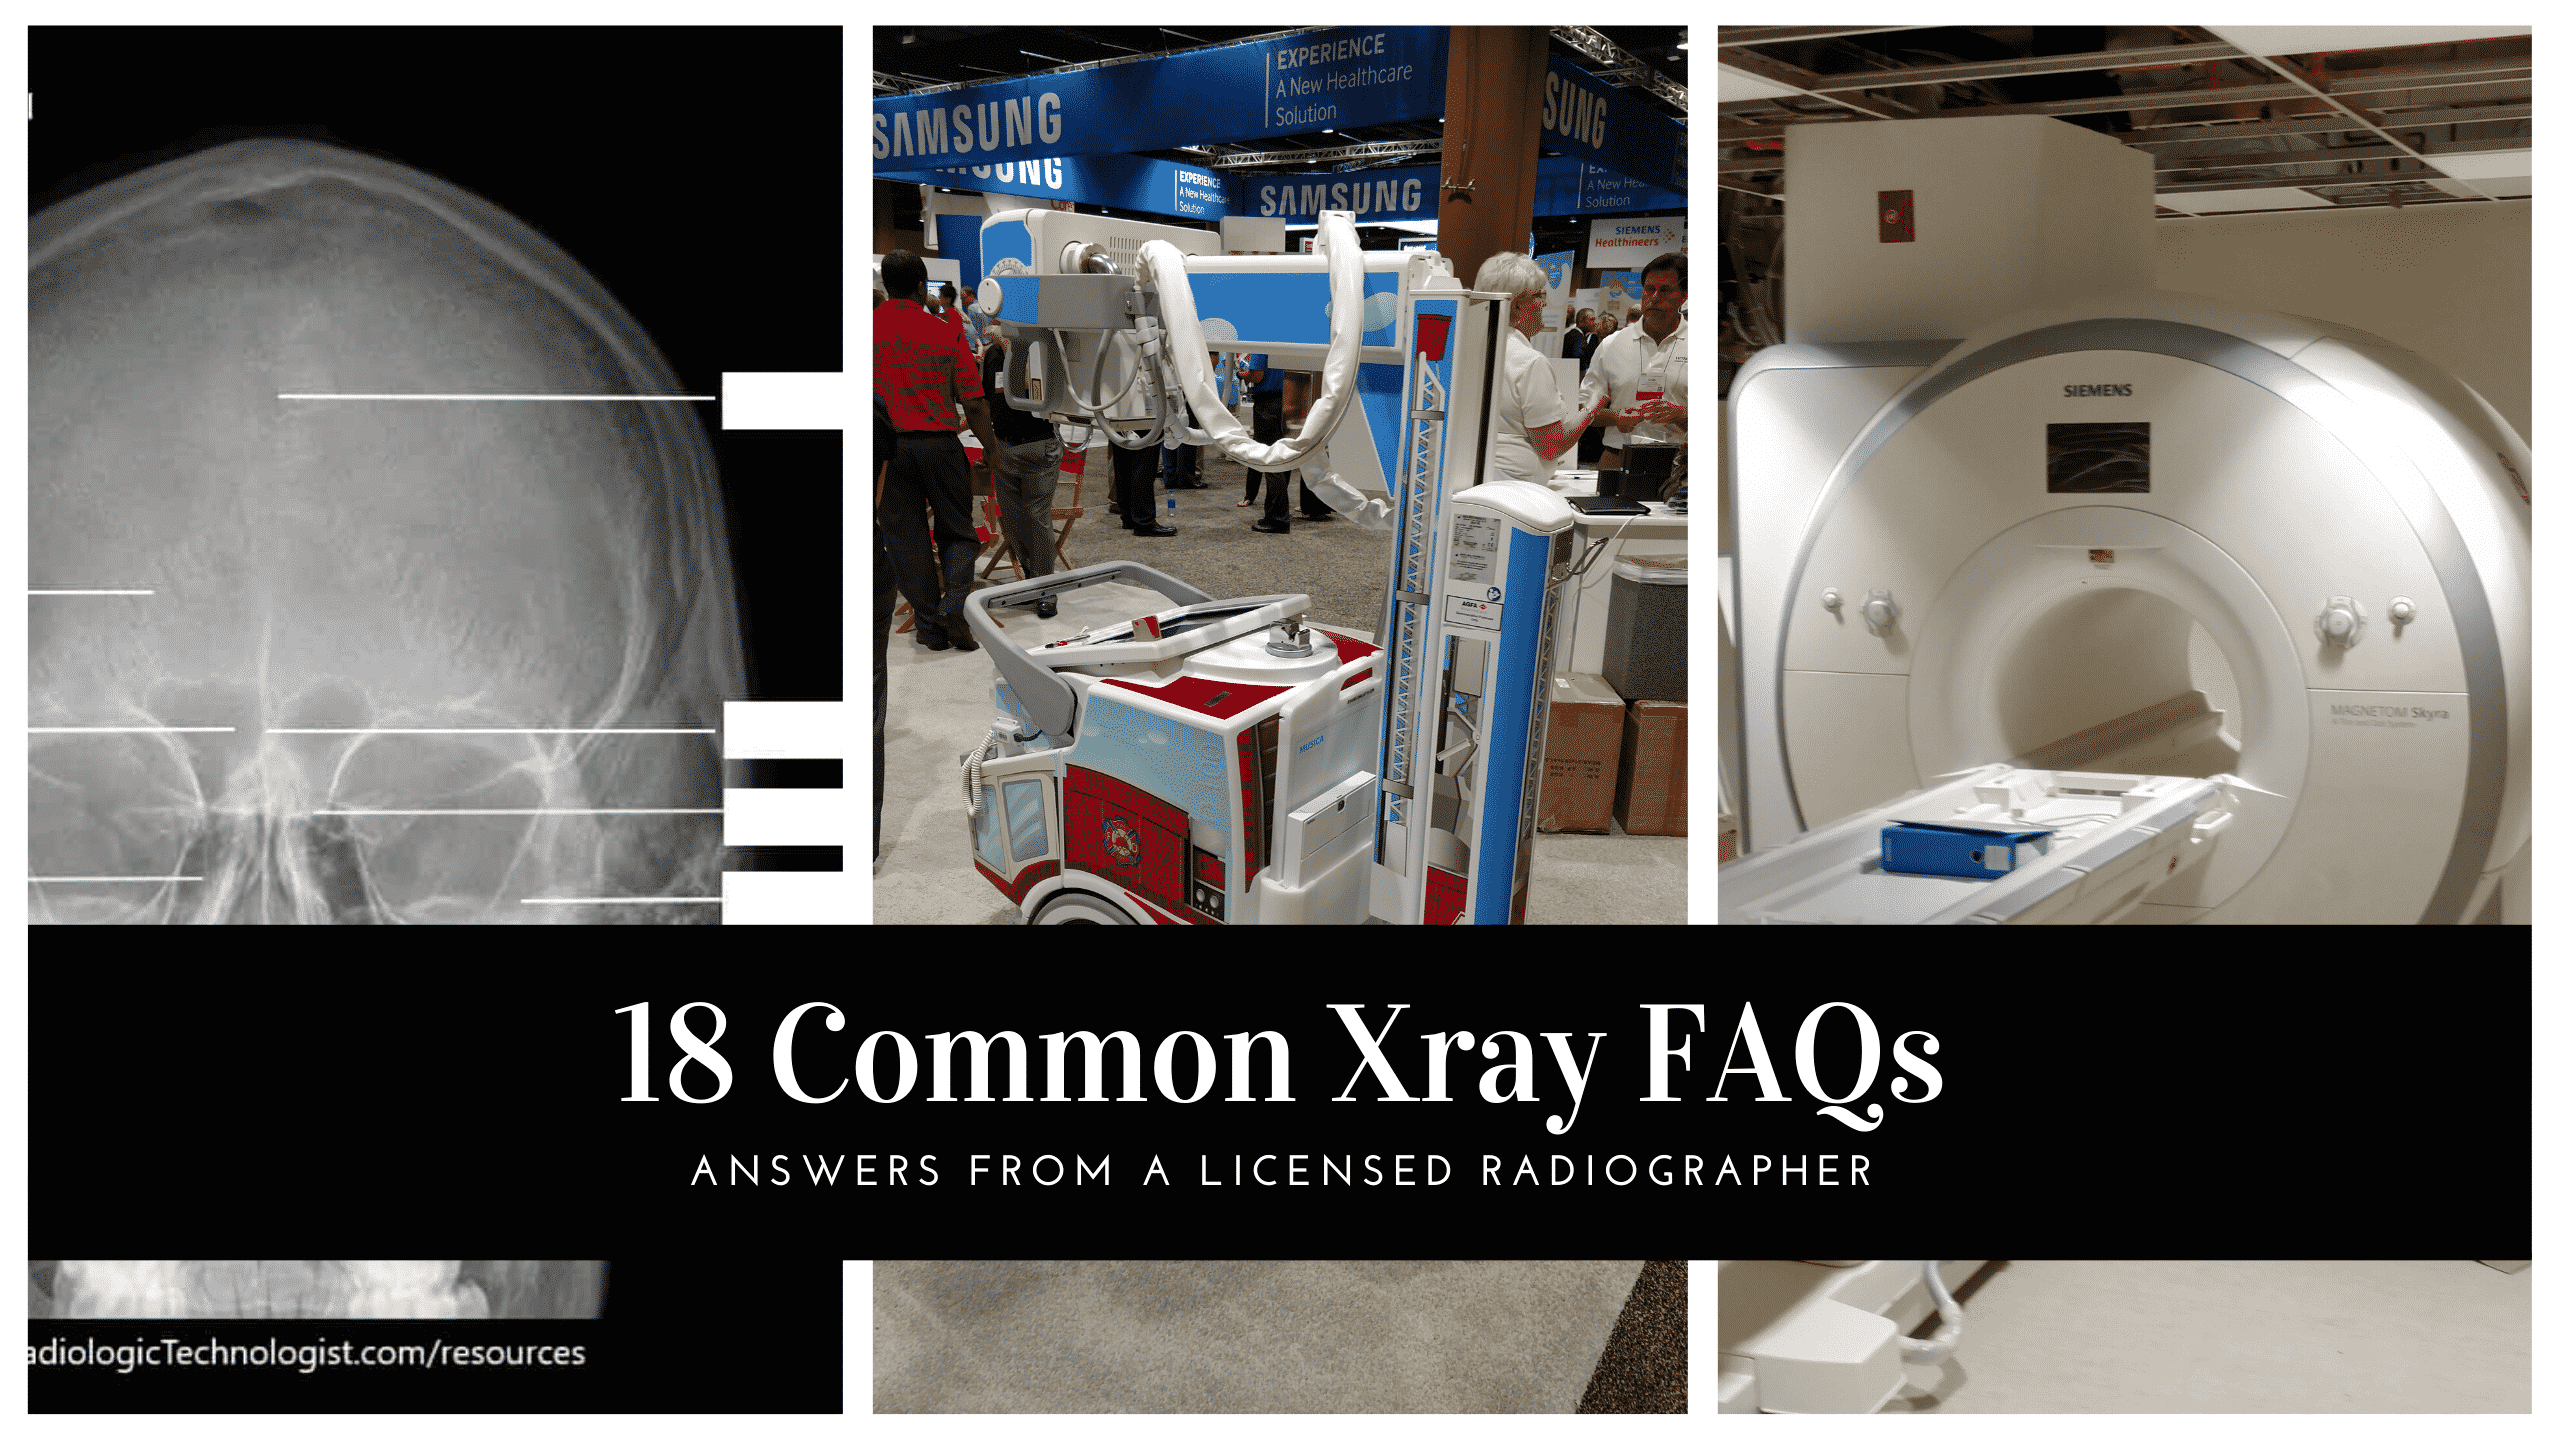 18 Common Xray FAQs